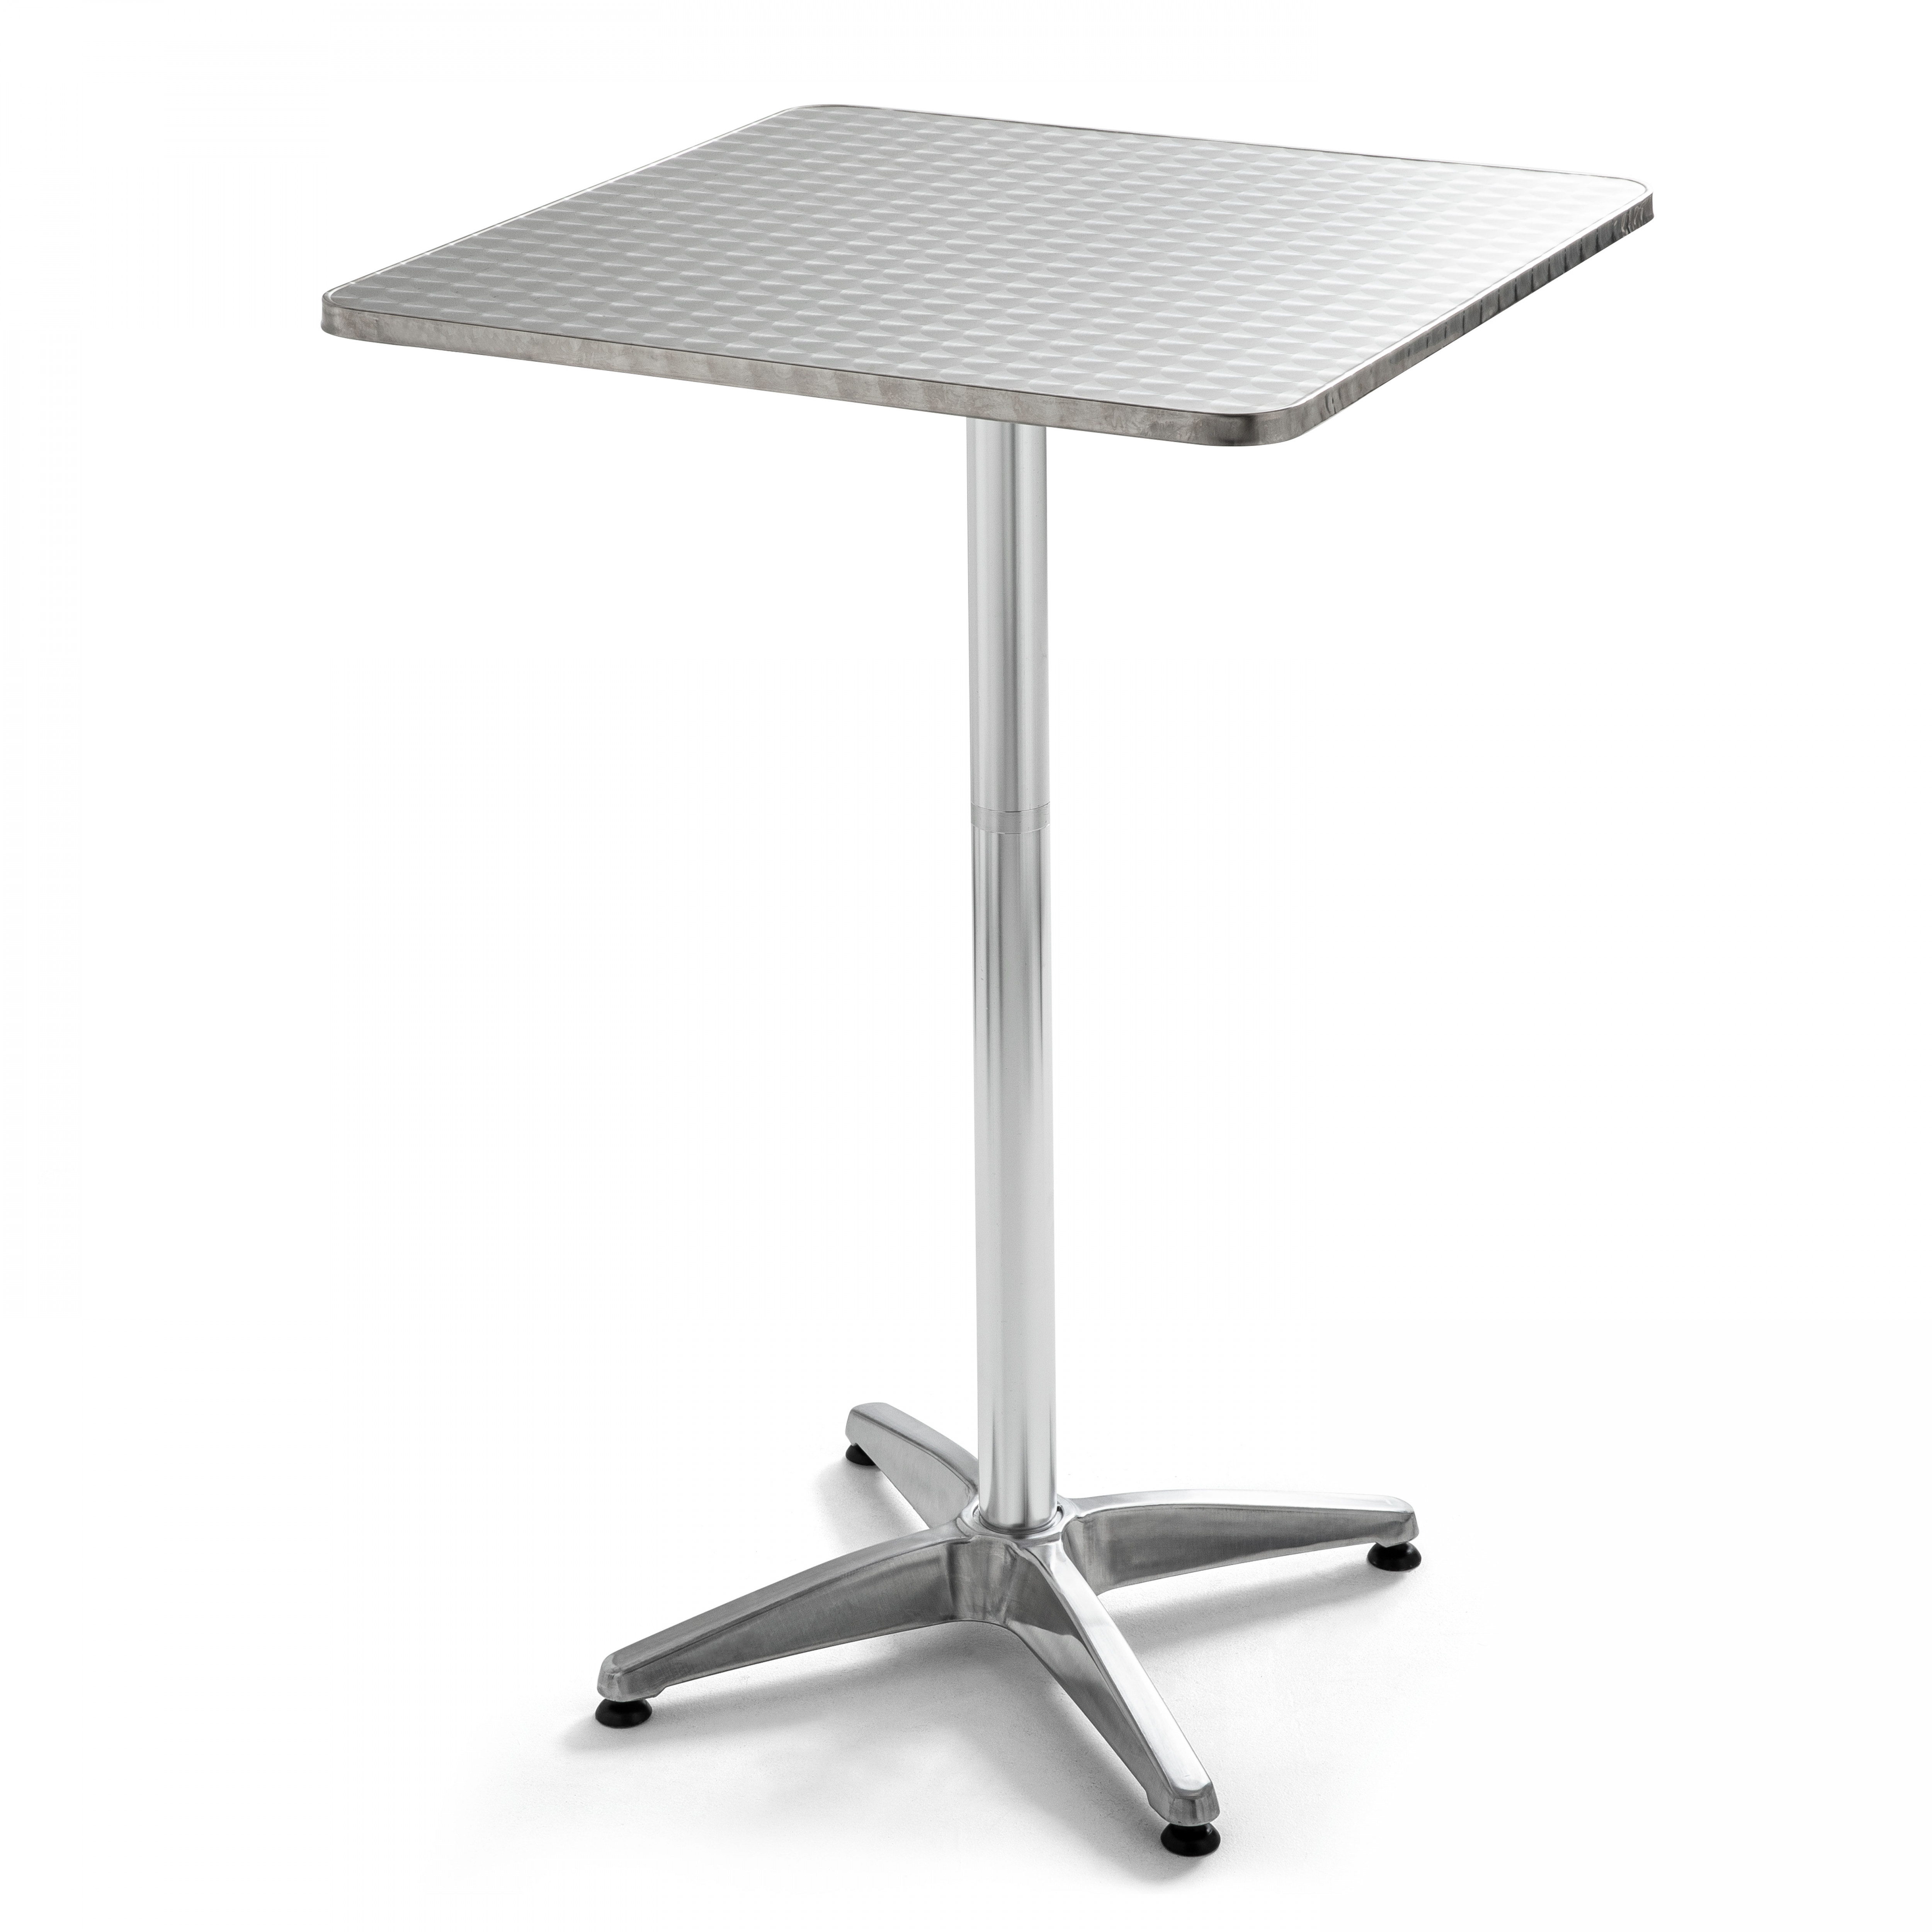 Table haute mange debout carrée (70 x 110 cm) en aluminium